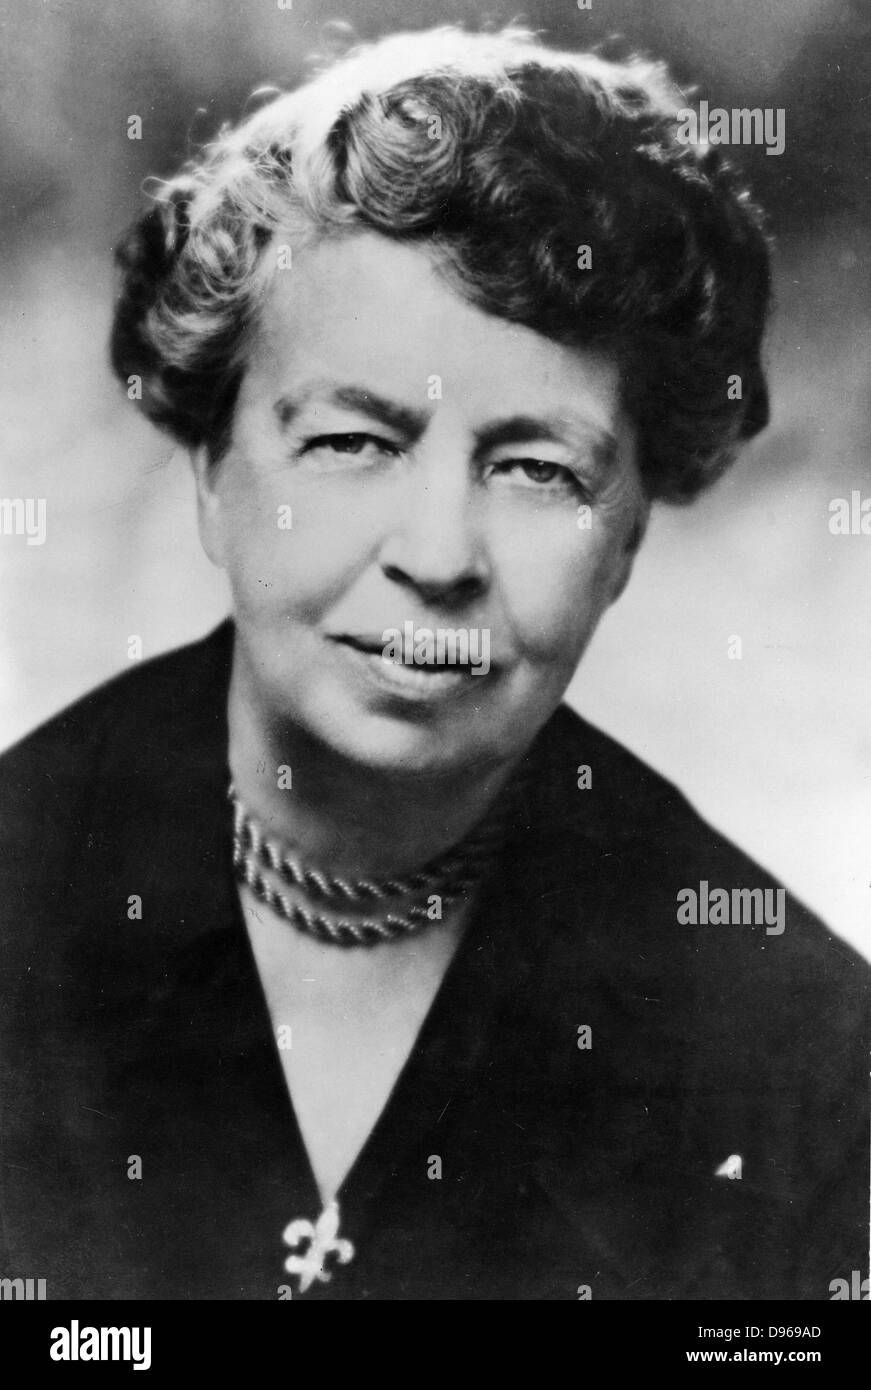 (Anna) Eleanor Roosevelt (1884-1962), US-amerikanische humanitäre. Vorsitzender UN-Kommission für Menschenrechte 1947-1951 und US-Vertreter in der Generalversammlung 1946. Frau von Franklin D. Roosevelt. Foto. Stockfoto